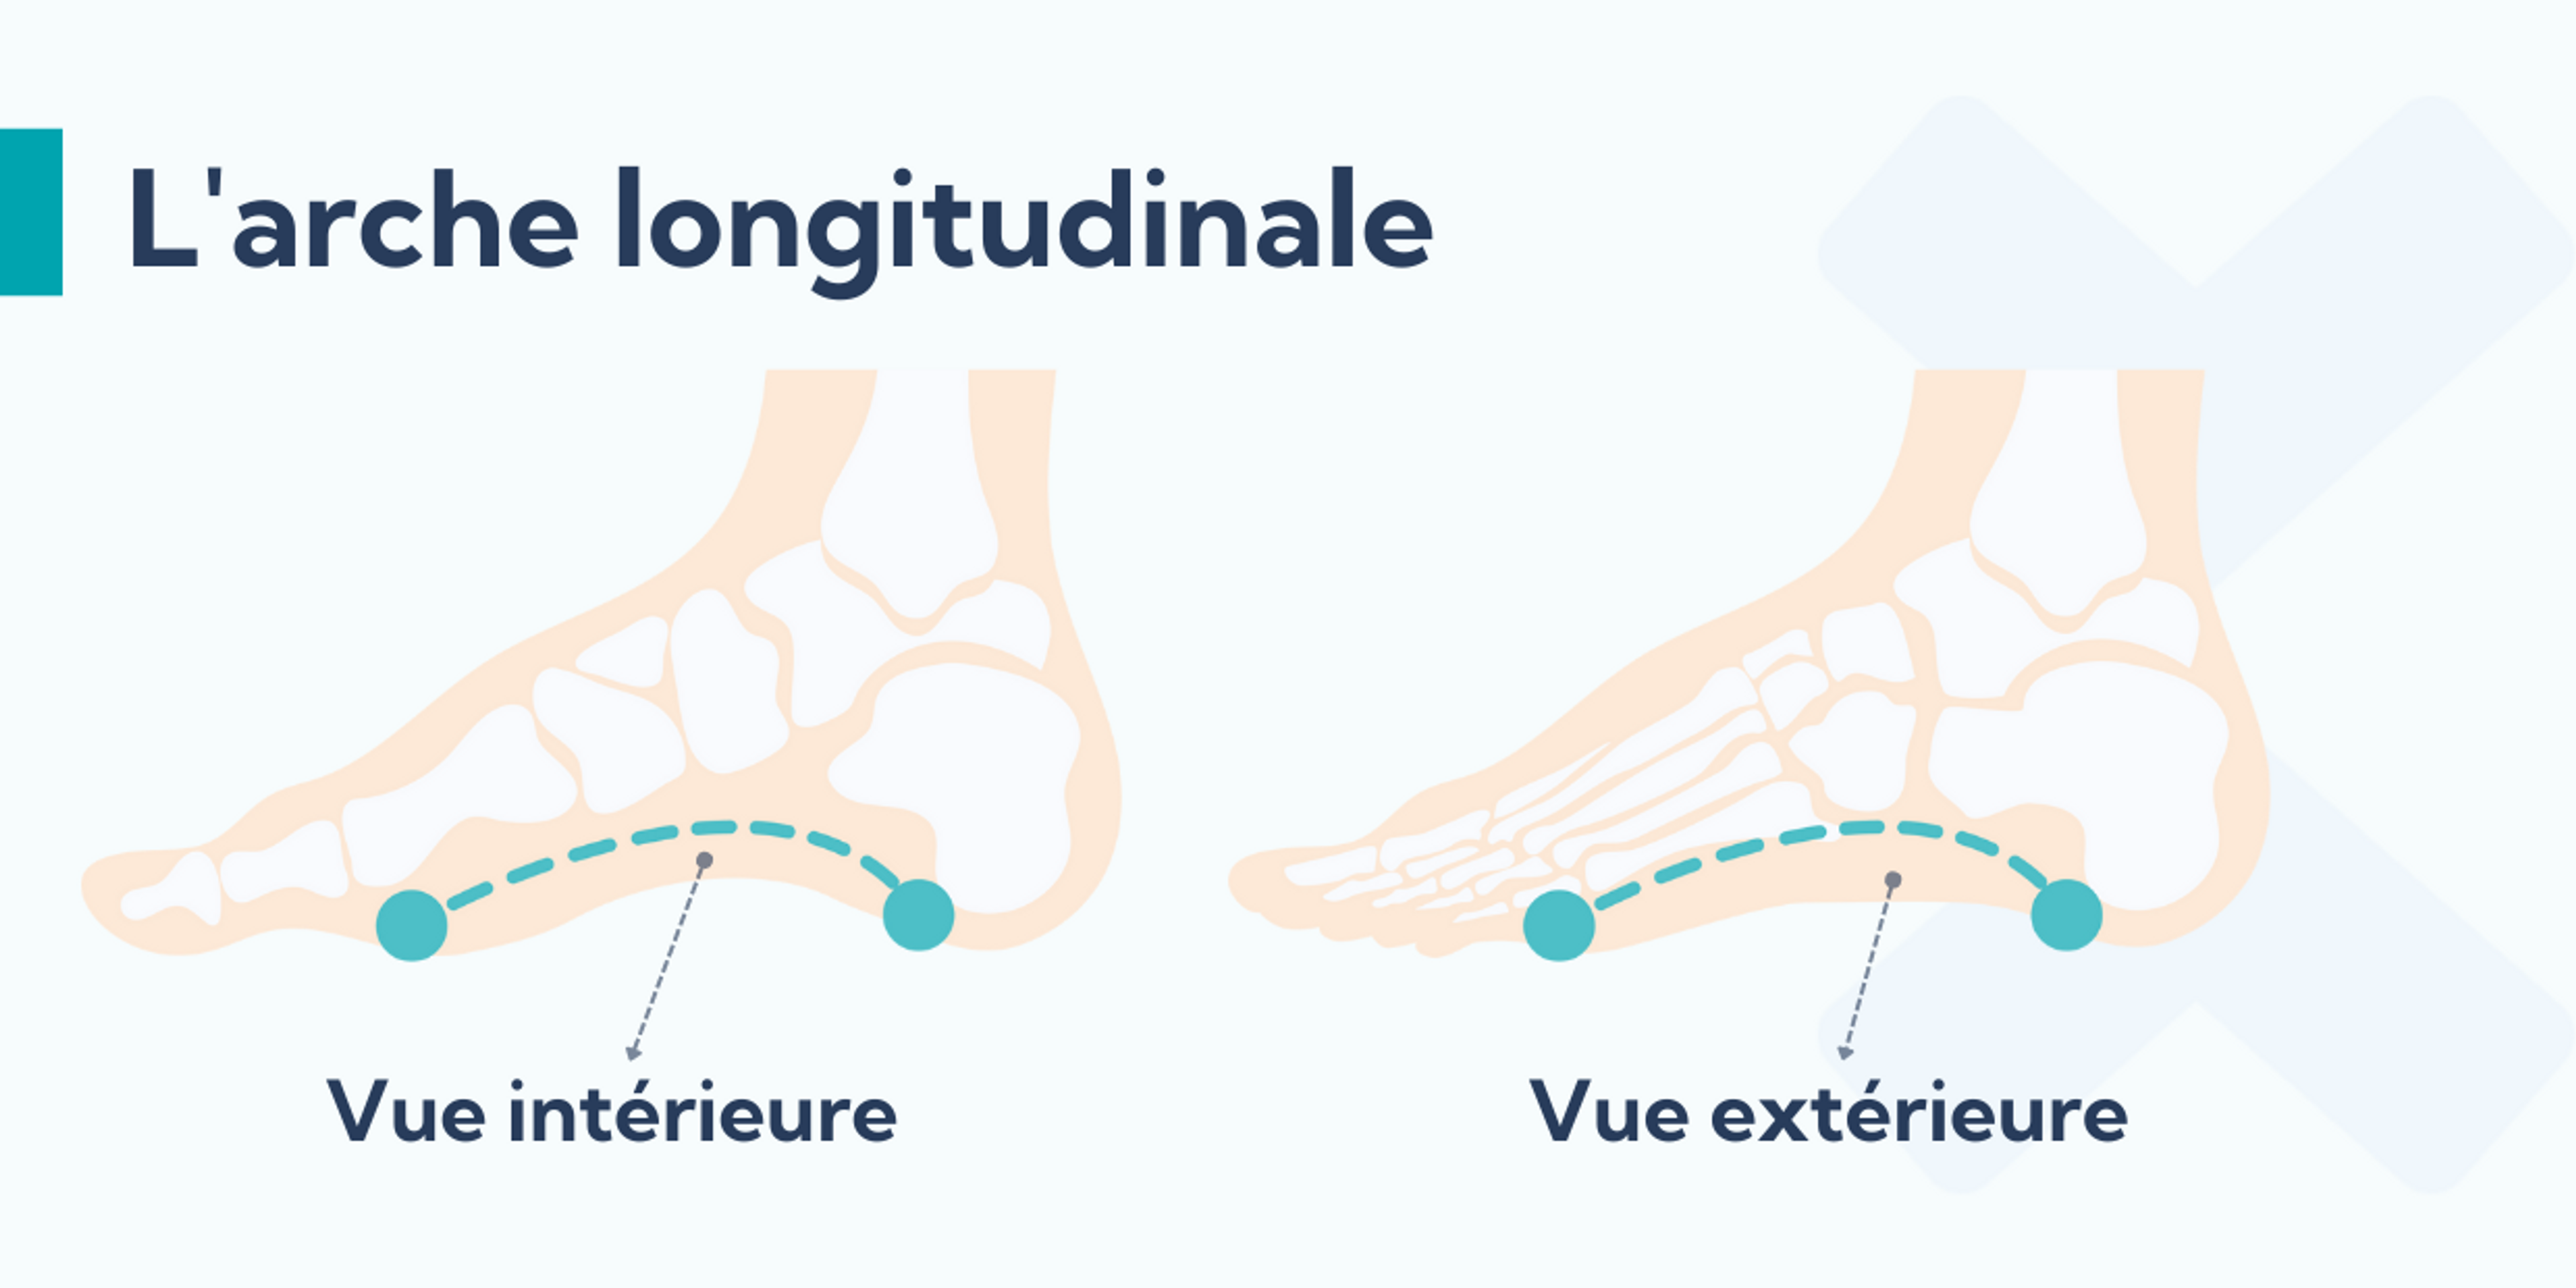 L'arche longitudinale latérale du pied se situe à l'extérieur du pied et l'arche longitudinale médiale à l'intérieur du pied.